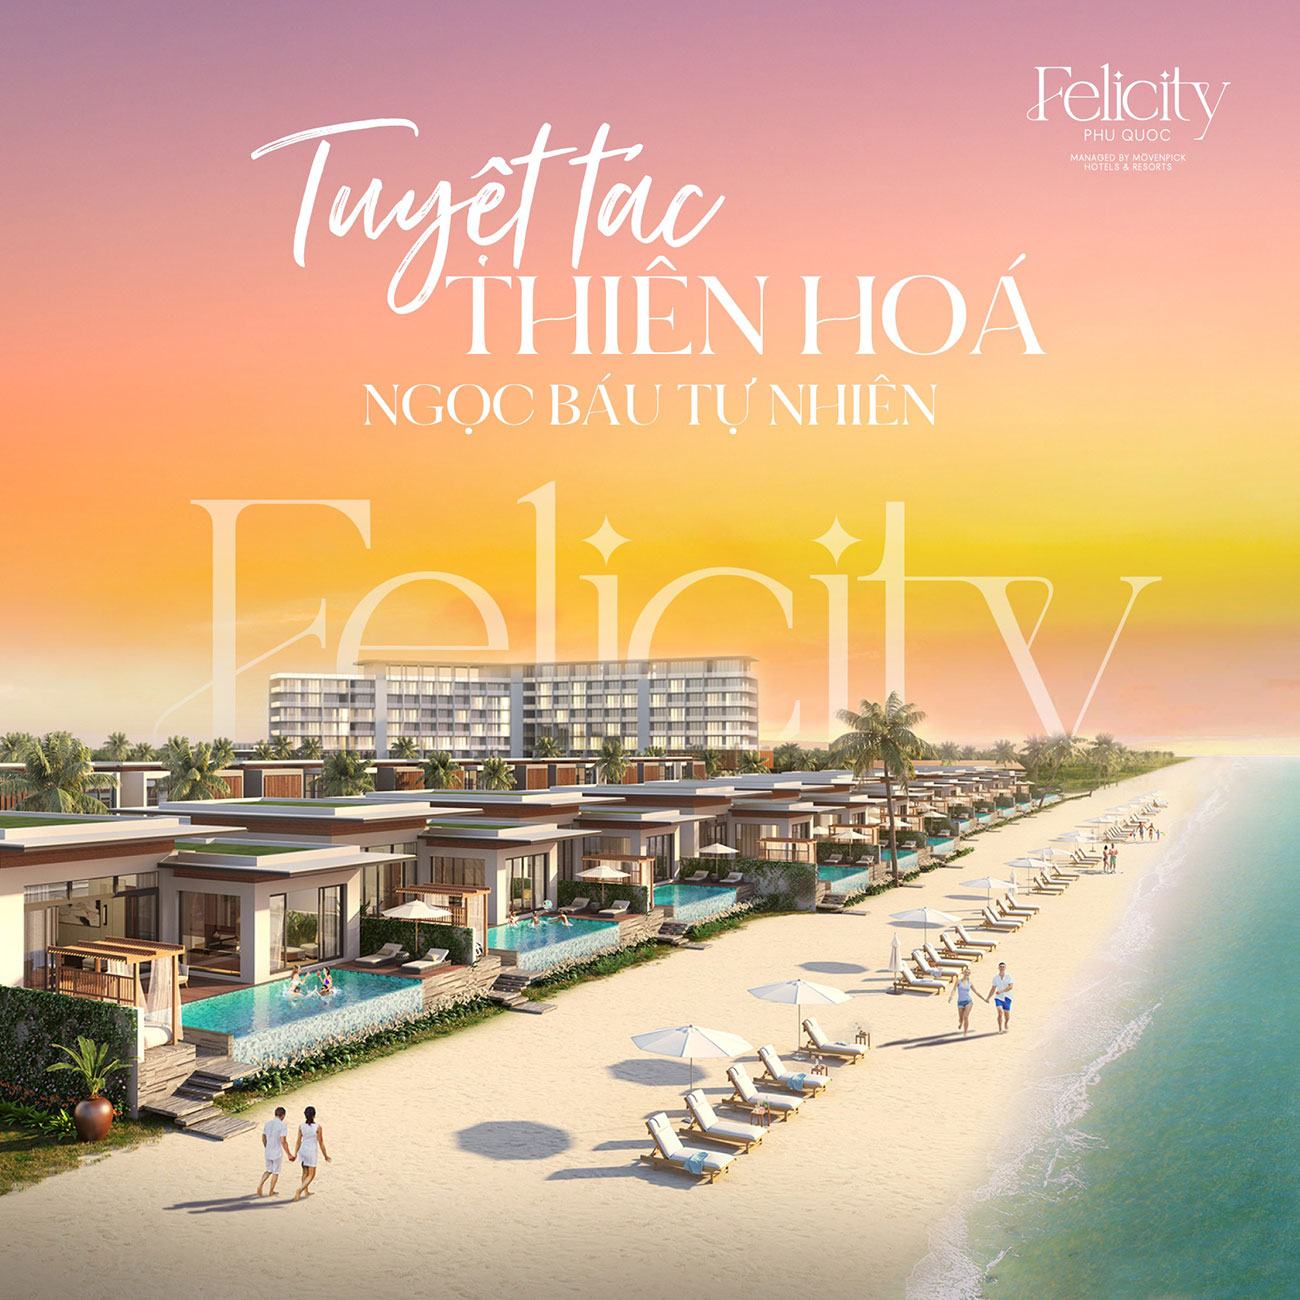 Felicity Phú Quốc Managed by Mövenpick Hotels & Resorts tuyệt tác thiên hóa từ ngọc báu của tự nhiên